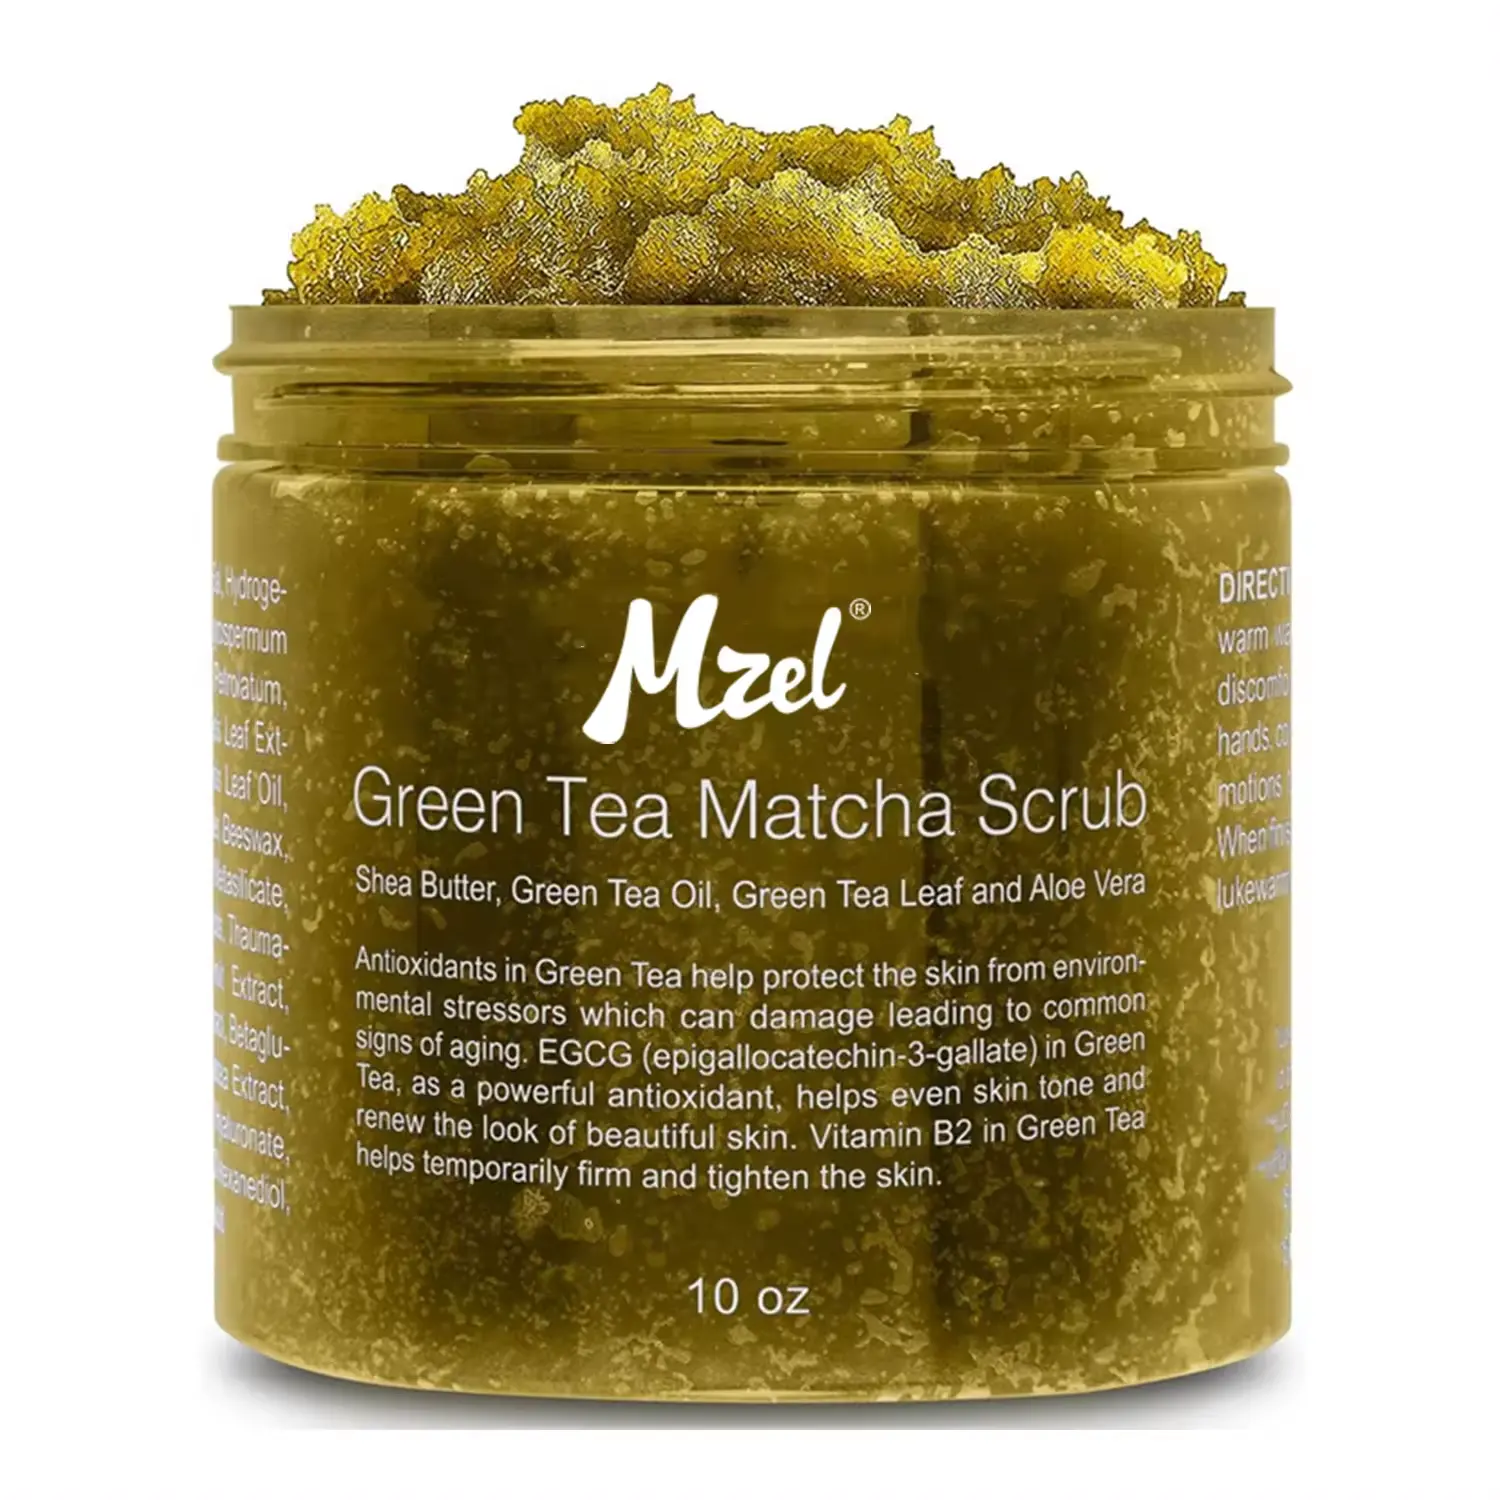 Private Label Green Tea Matcha viso Body Scrub corpo e Scrub viso idrata nutre la cura della pelle del viso